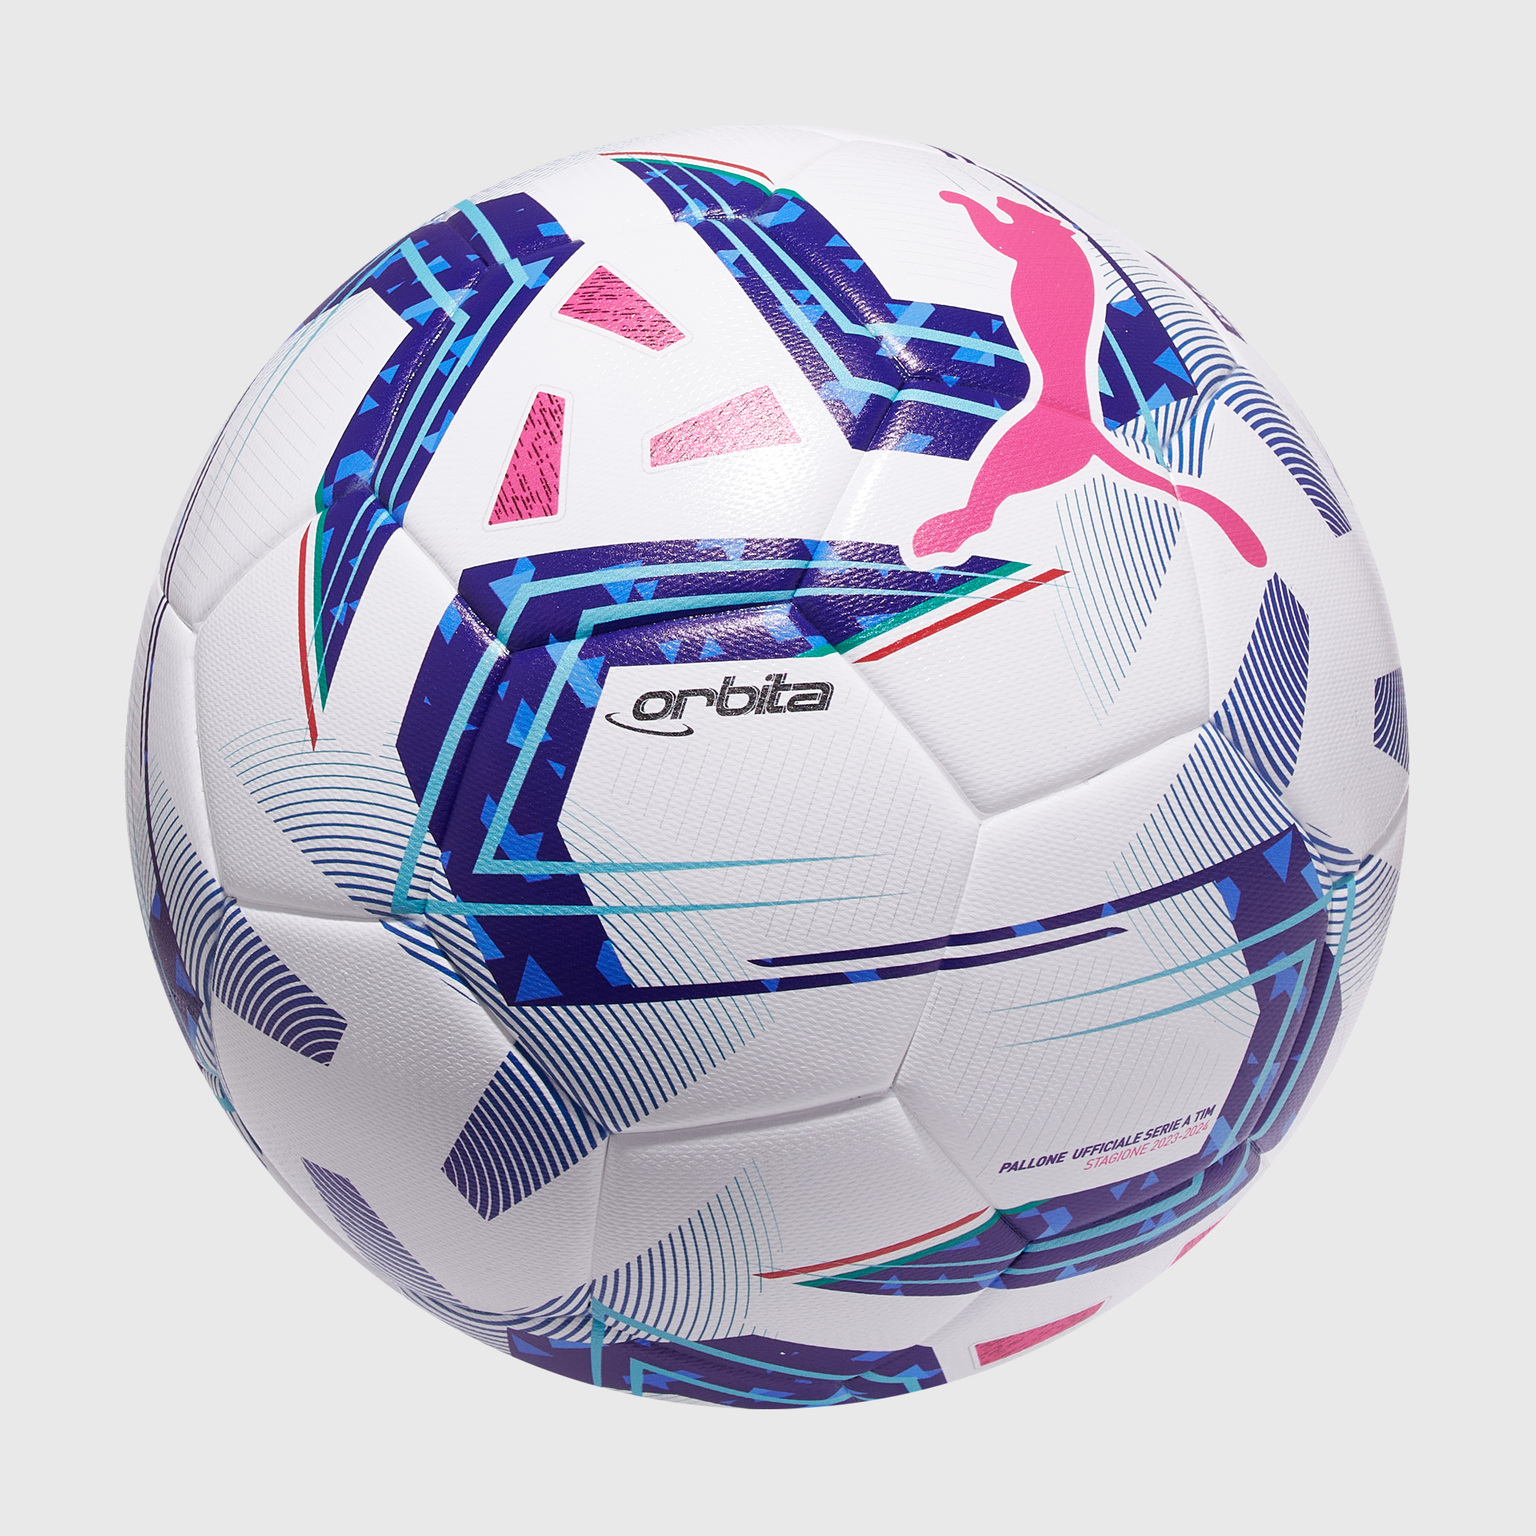 Футбольный мяч Puma Orbita Serie A 08411501